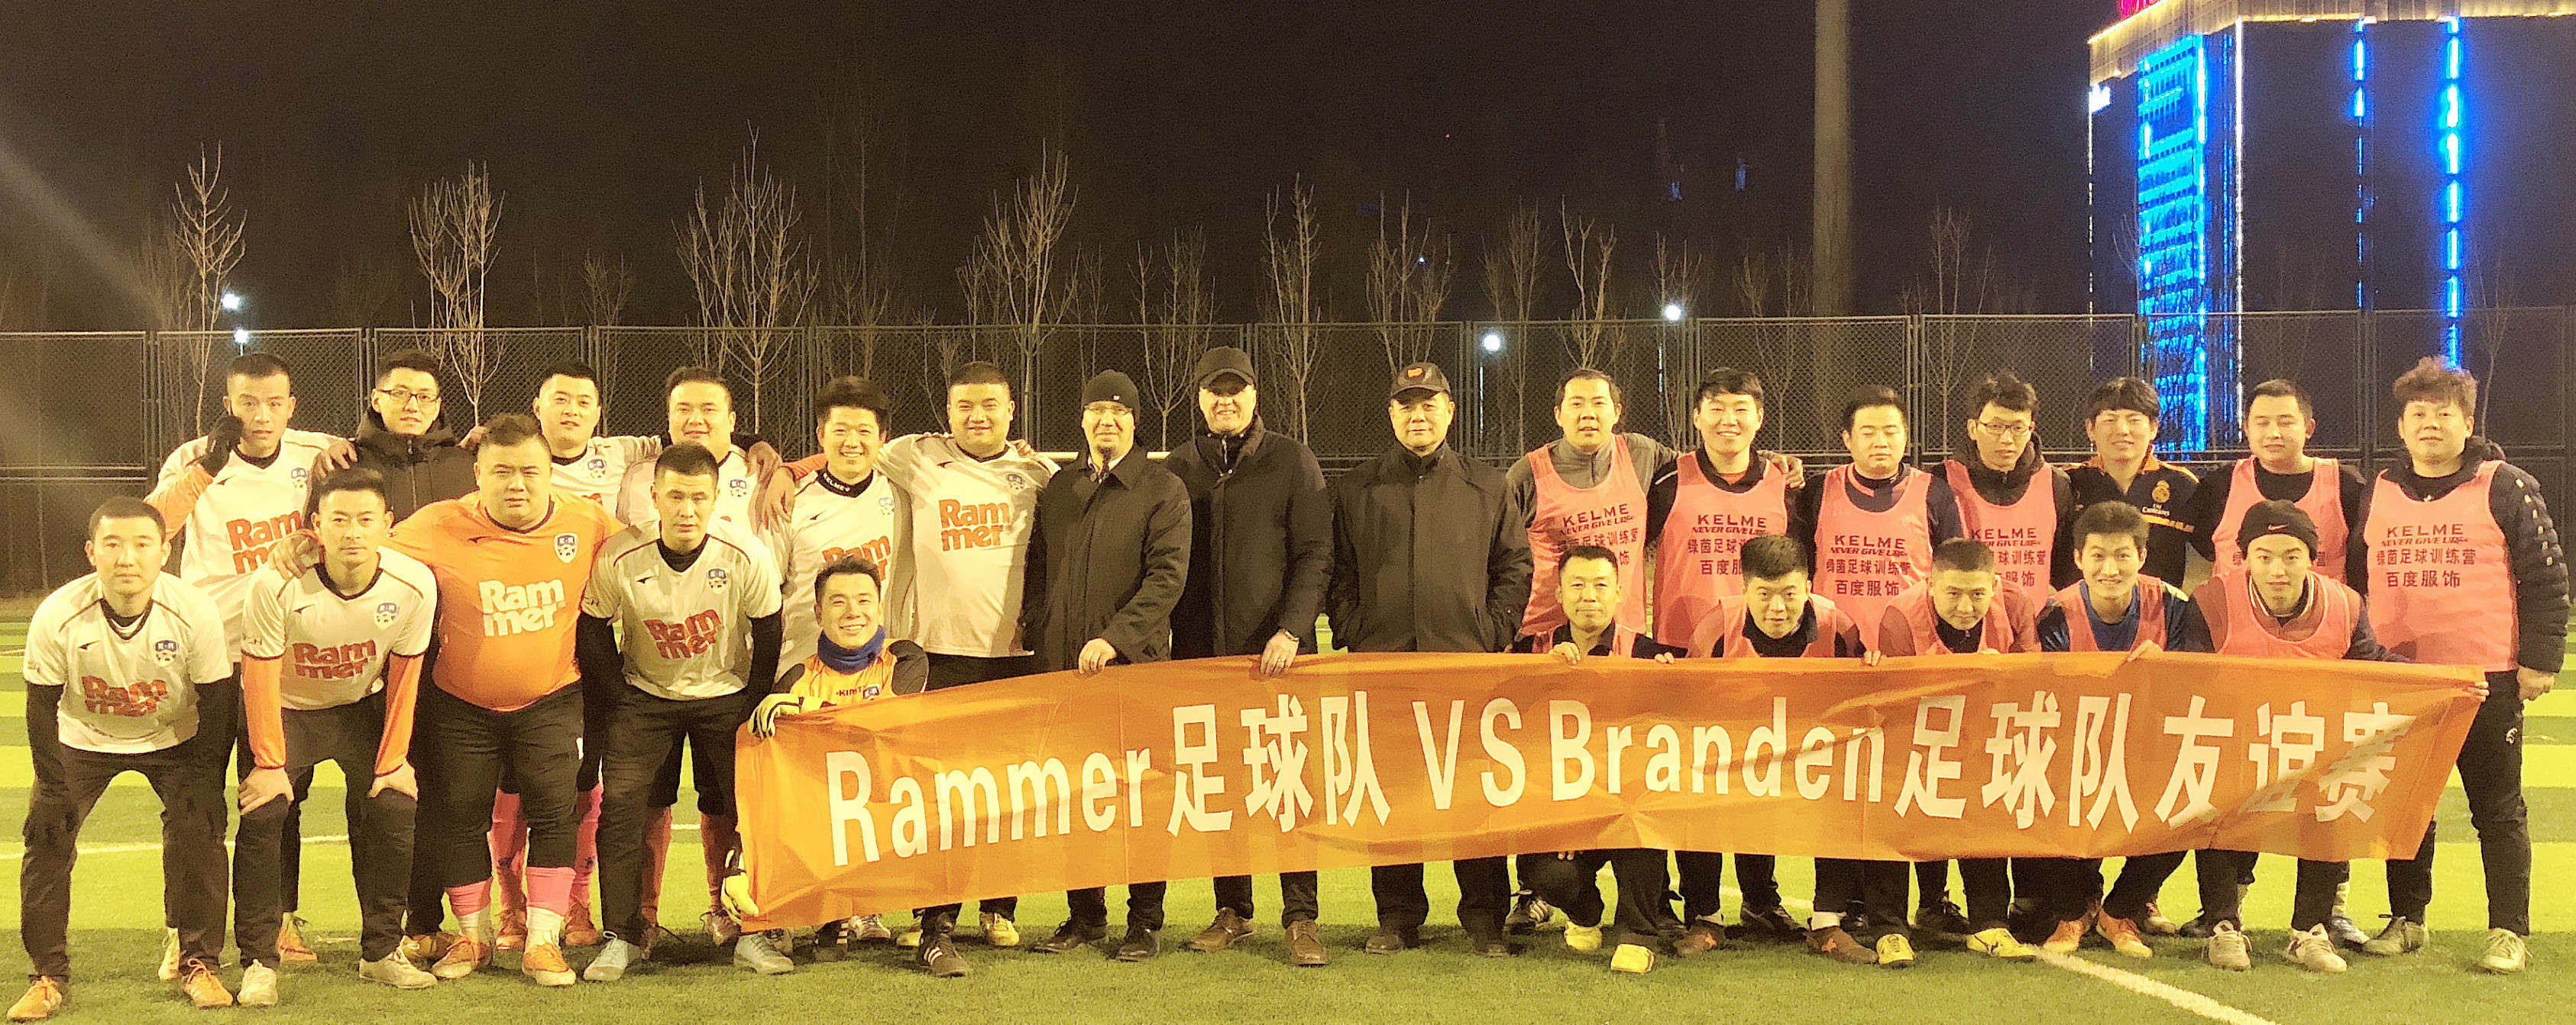 ¡El equipo Rammer ha estado cortando un partido irresistible en los partidos de fútbol de la liga!